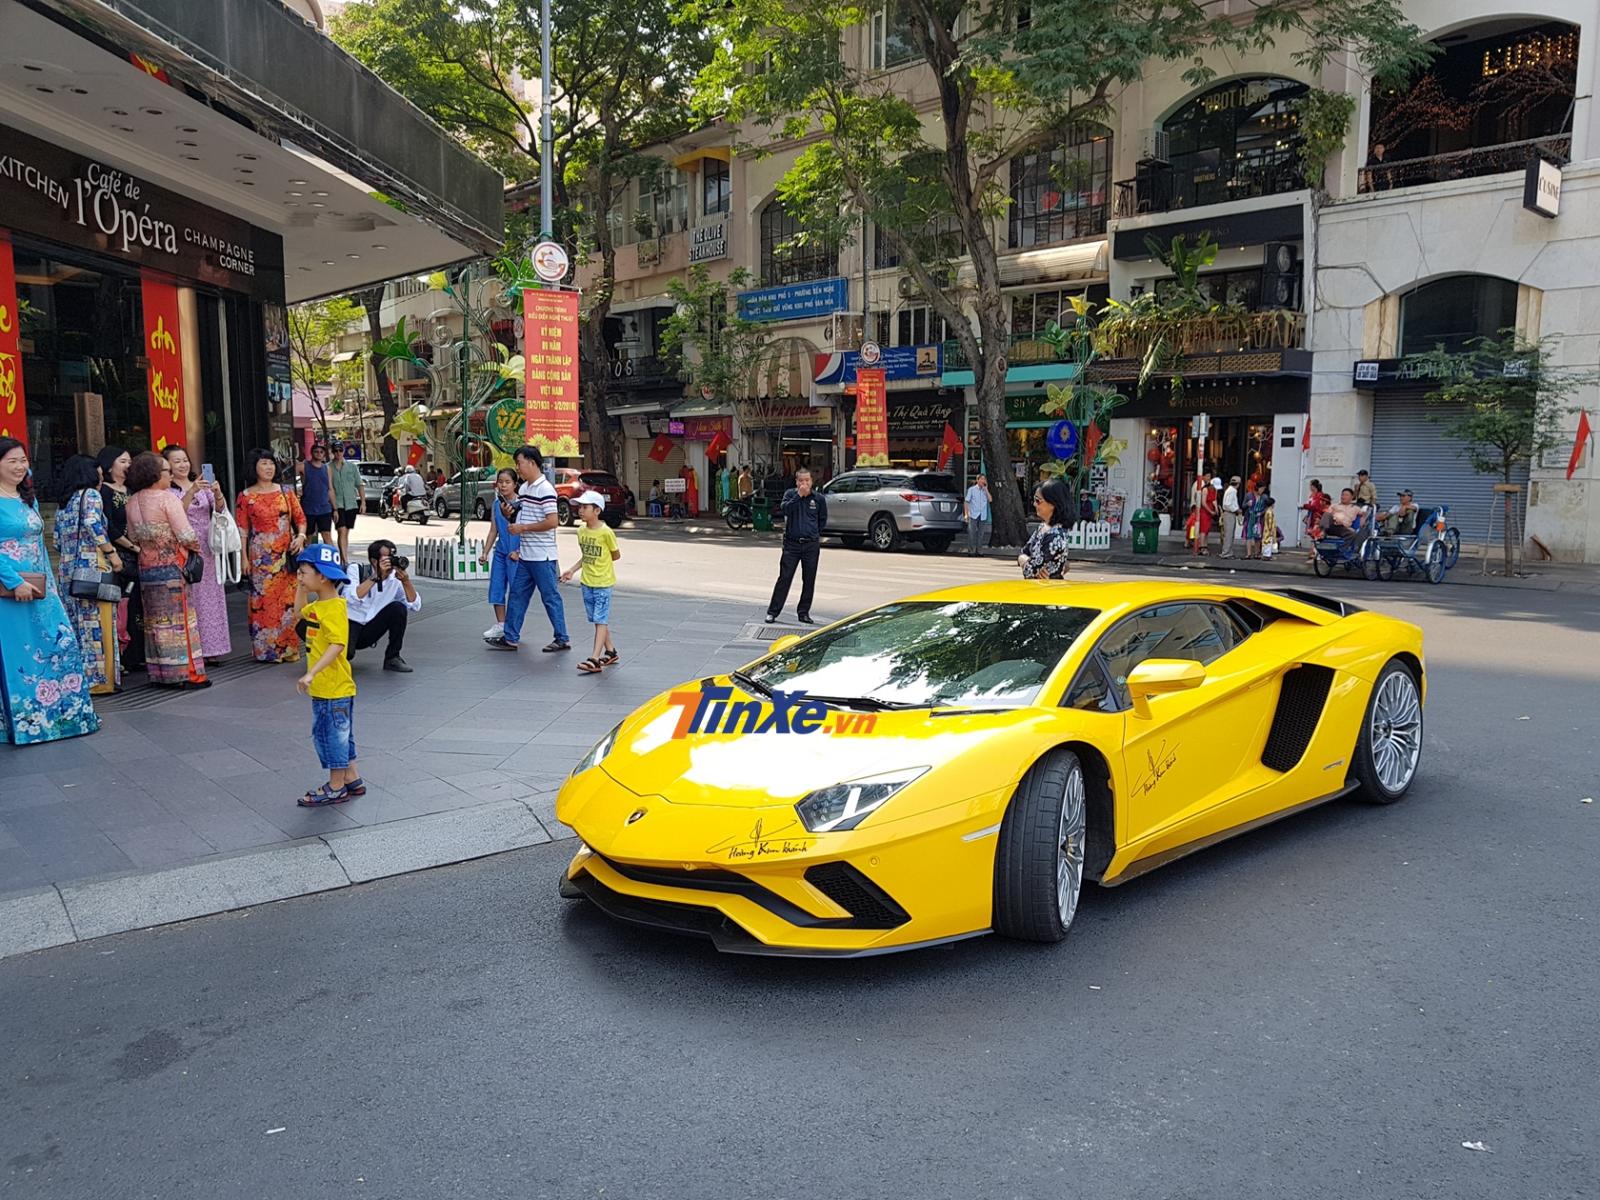  Lamborghini Aventador S LP740-4 là chiếc siêu xe hăng hái nã pháo nhiều nhất trong dàn xe gần 200 tỷ đồng có mặt trên đường phố Sài thành